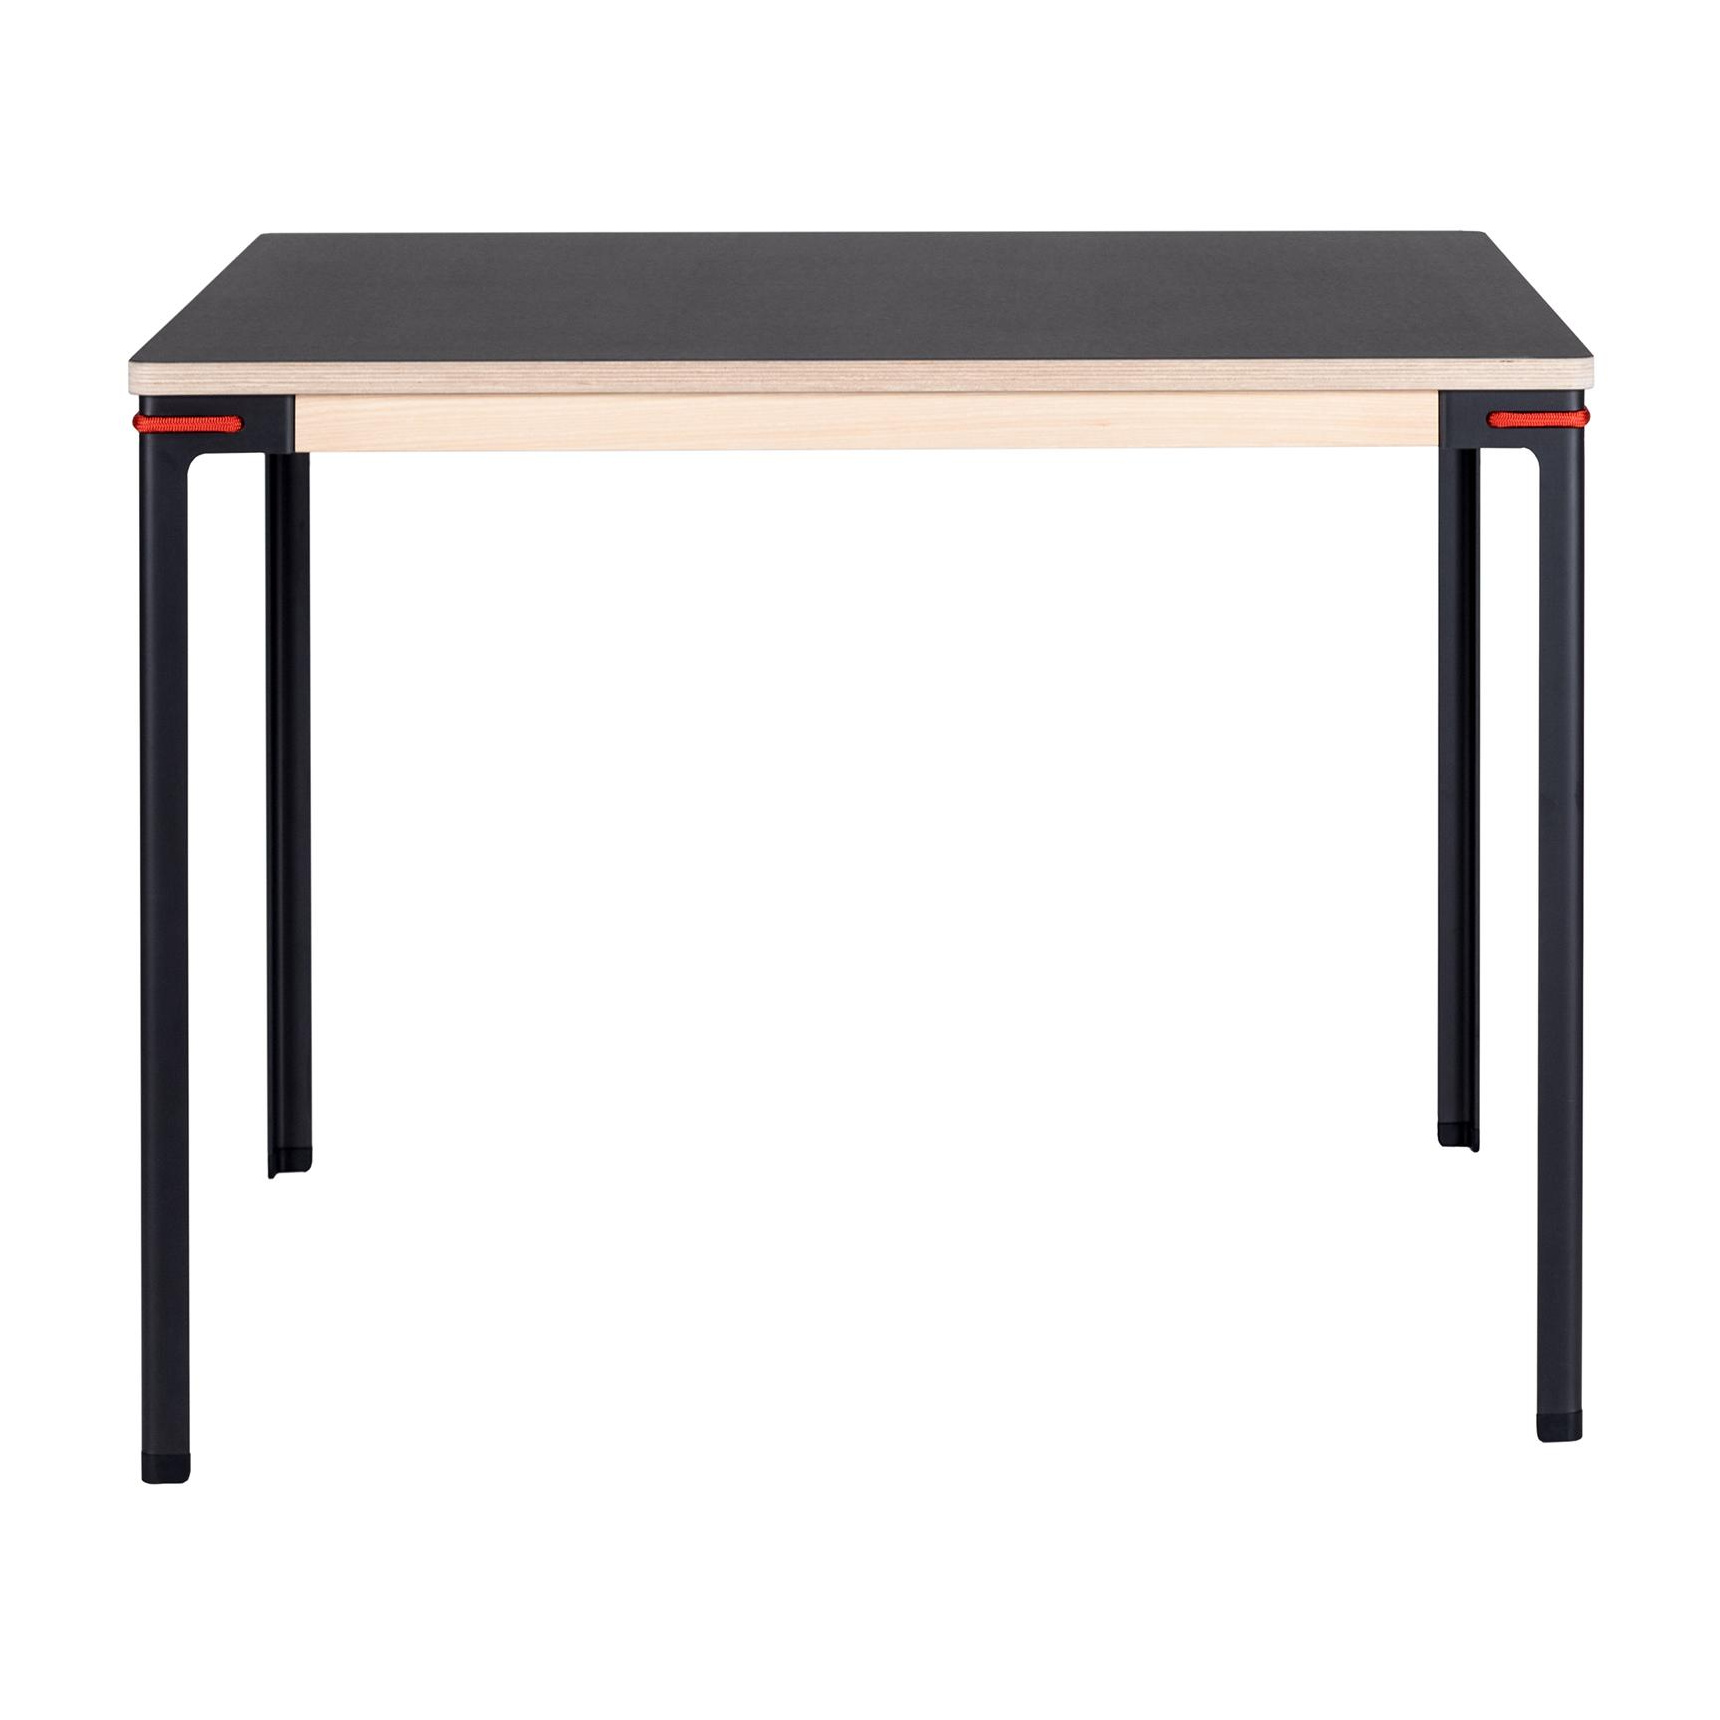 Moormann - Seiltänzer Tisch quadratisch 90x90cm - Linoleum schwarz/rotes Seil/Zarge esche/H 75cm/Gestell Stahl nitriert von Moormann